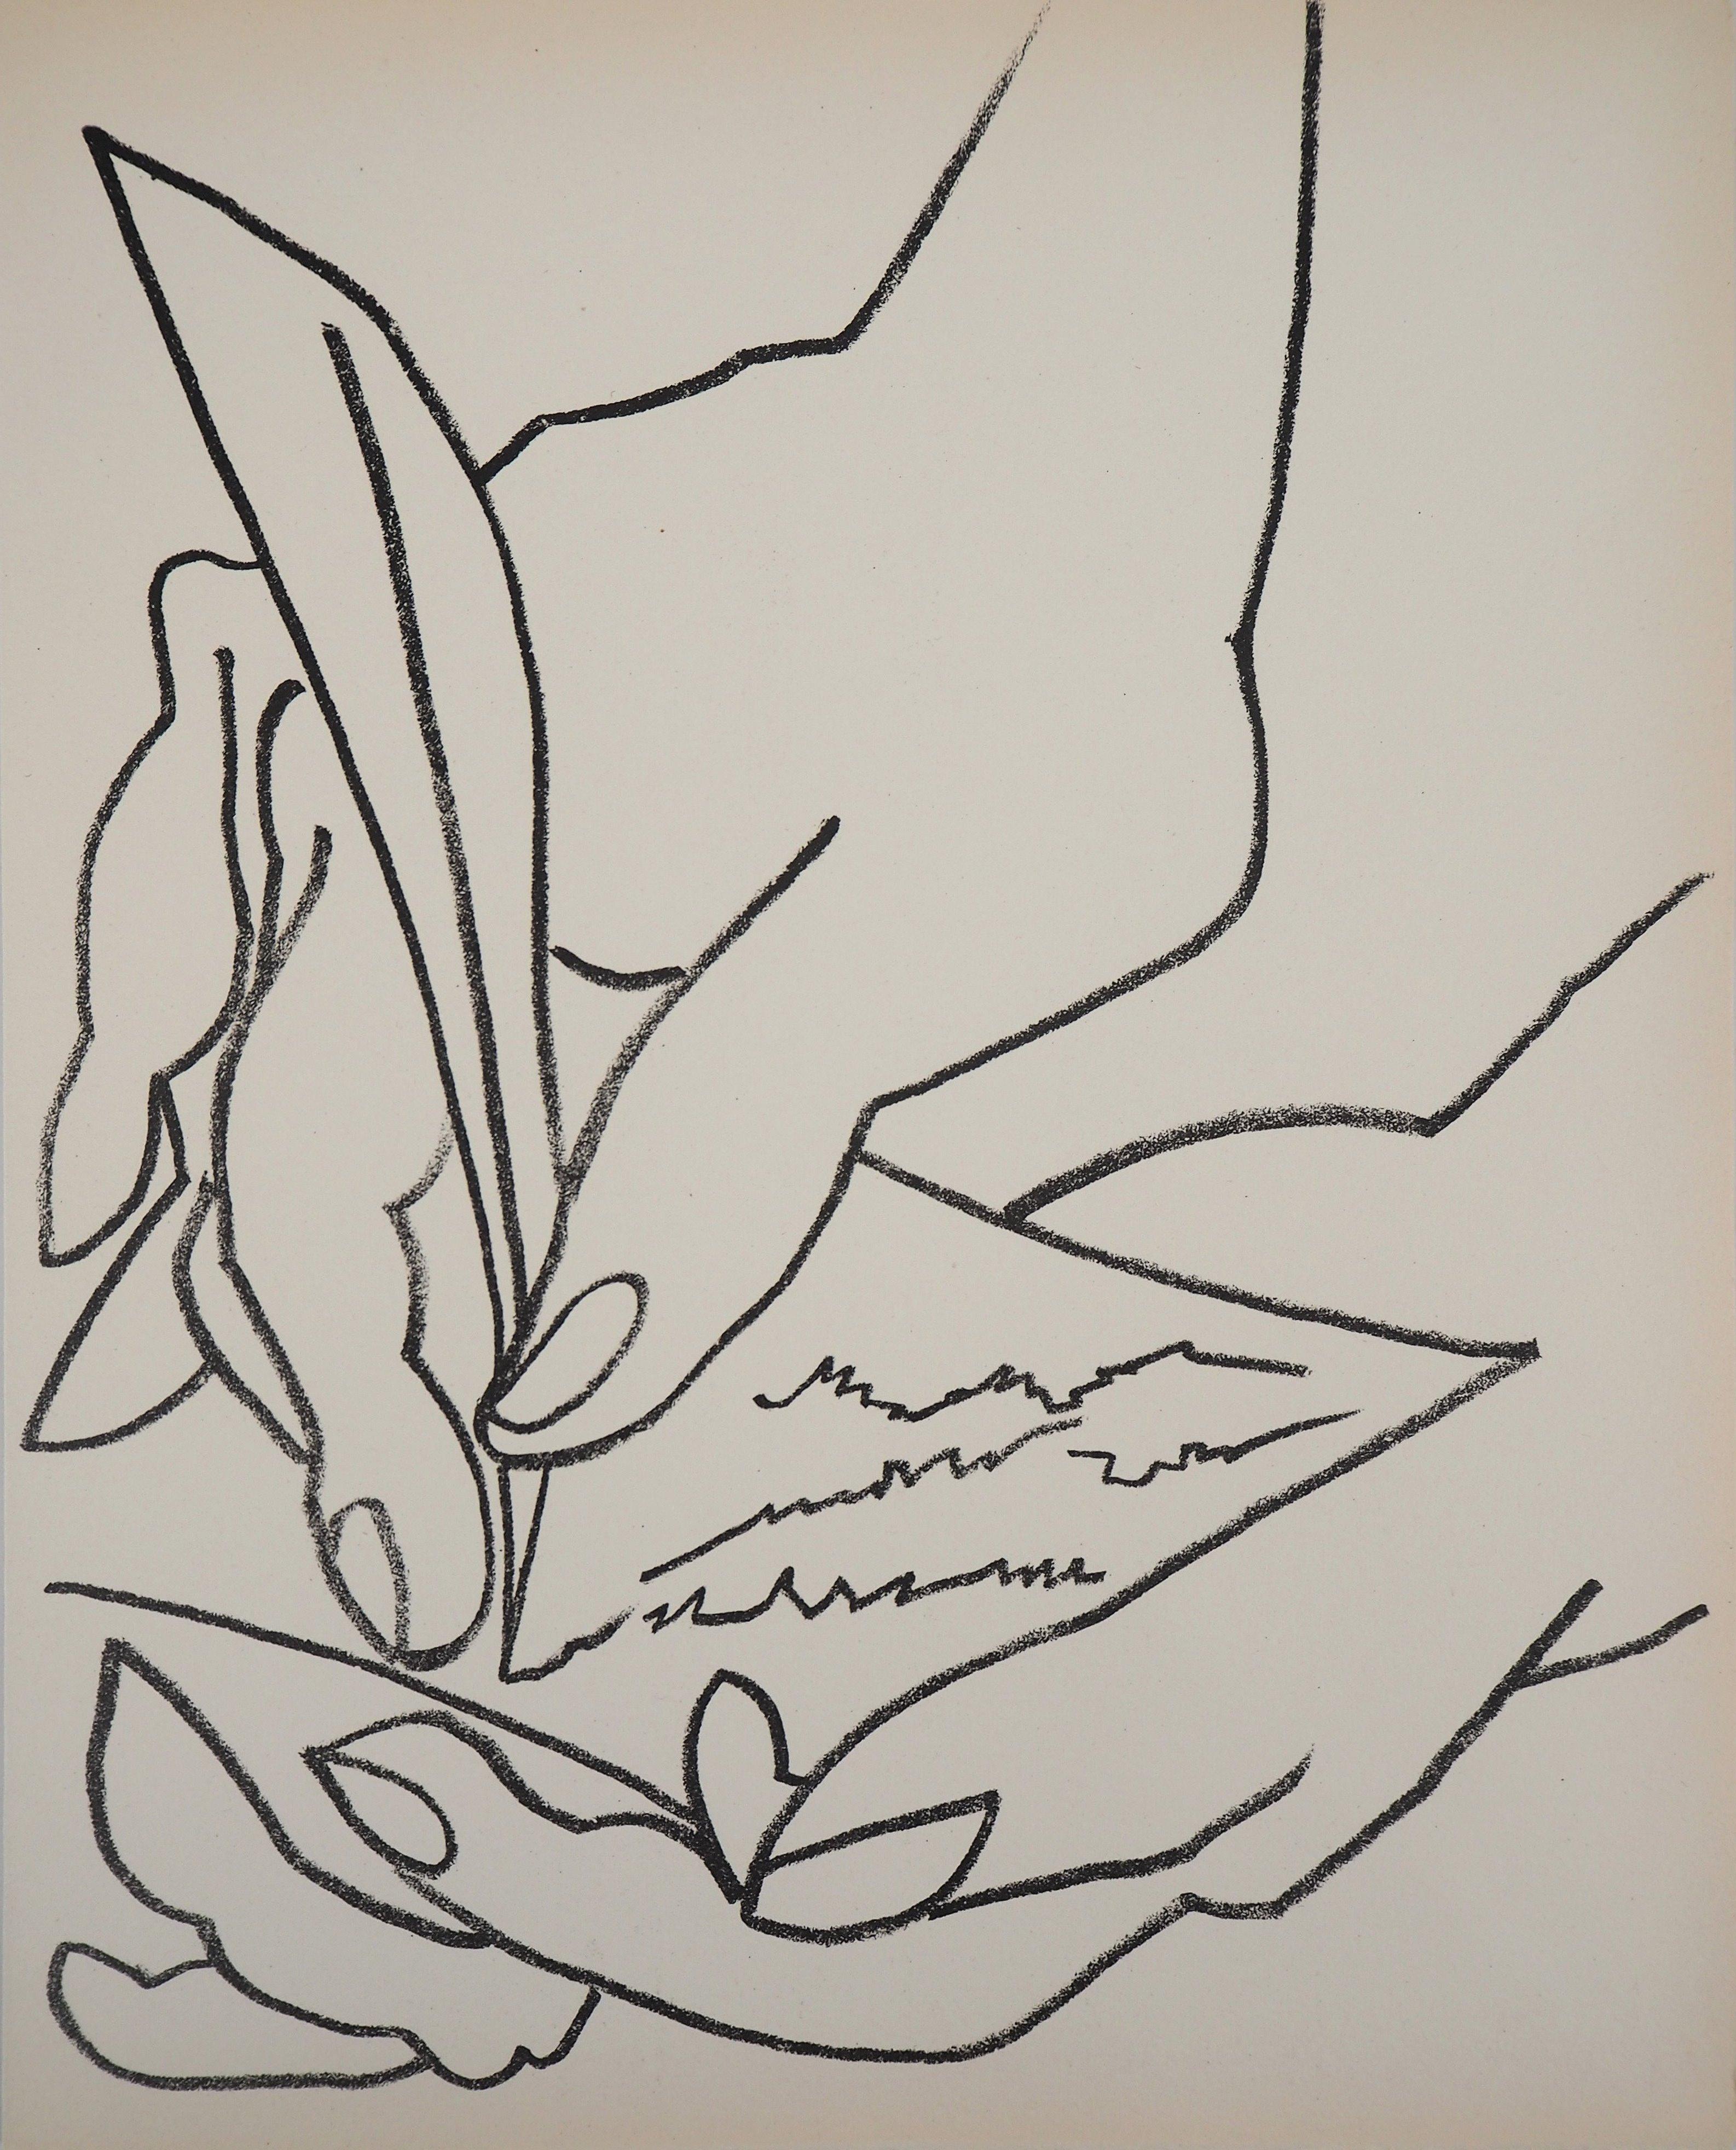 Françoise Gilot Figurative Print - The Love Letter, 1951 - Original lithograph (Catalog raisonne Stone Echoes #8)